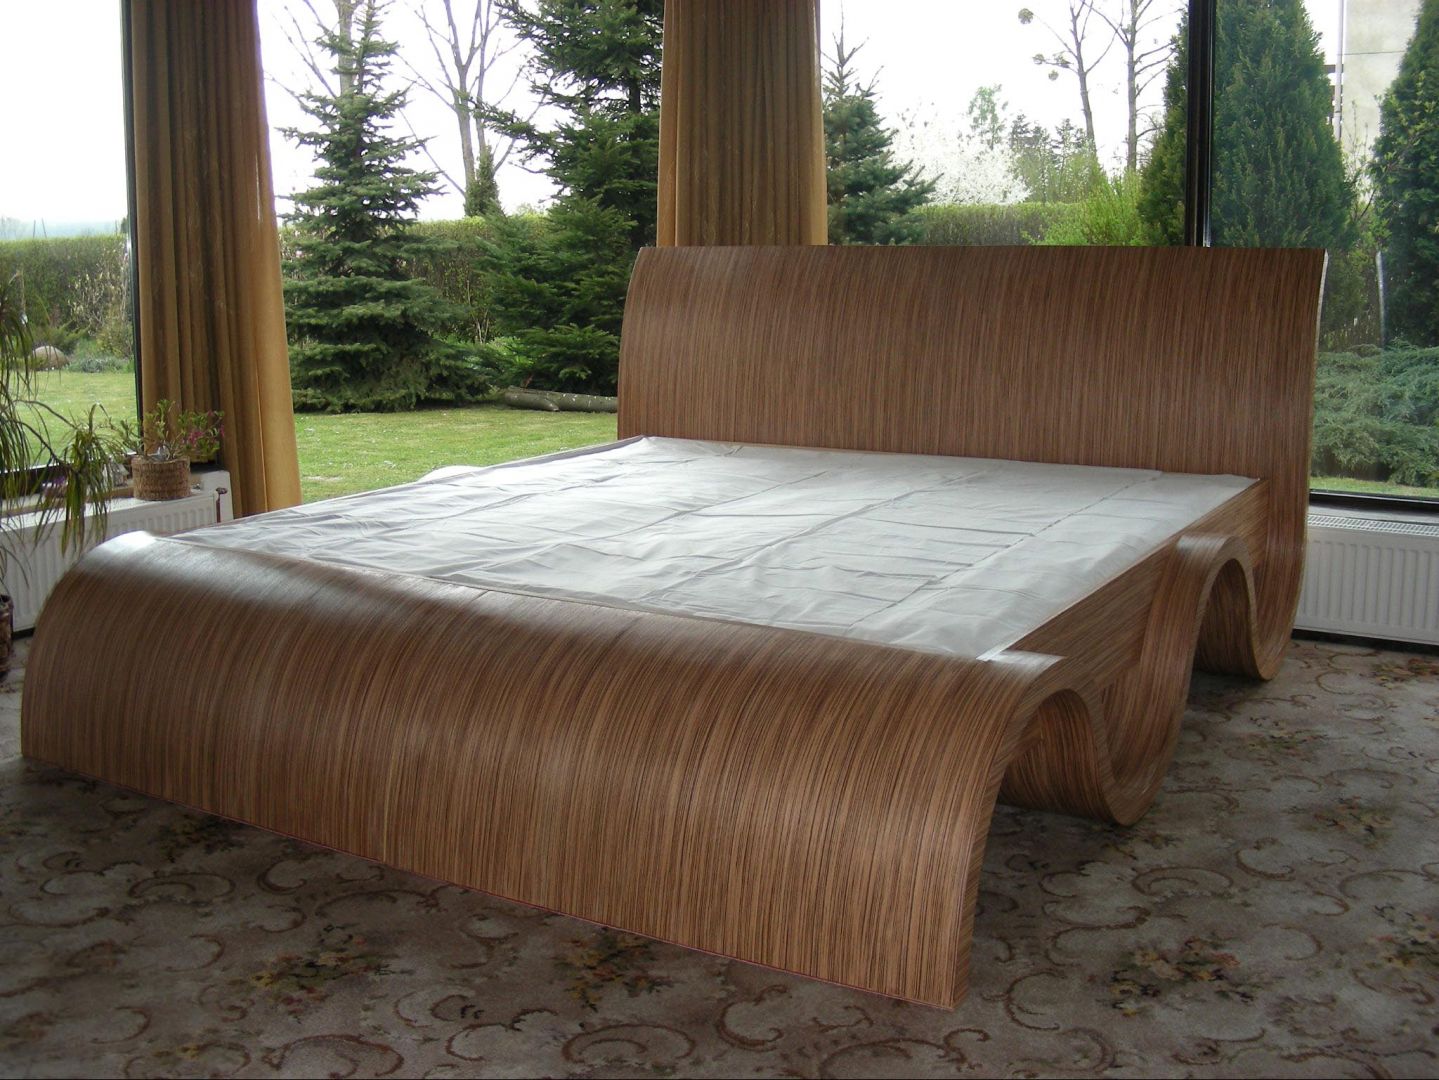 Drewniane łóżko imitujące falę to mebel do nowoczesnego, jak również rustykalnego wnętrza. Projekt Tomasza Wagnera
Fot. Archiwum